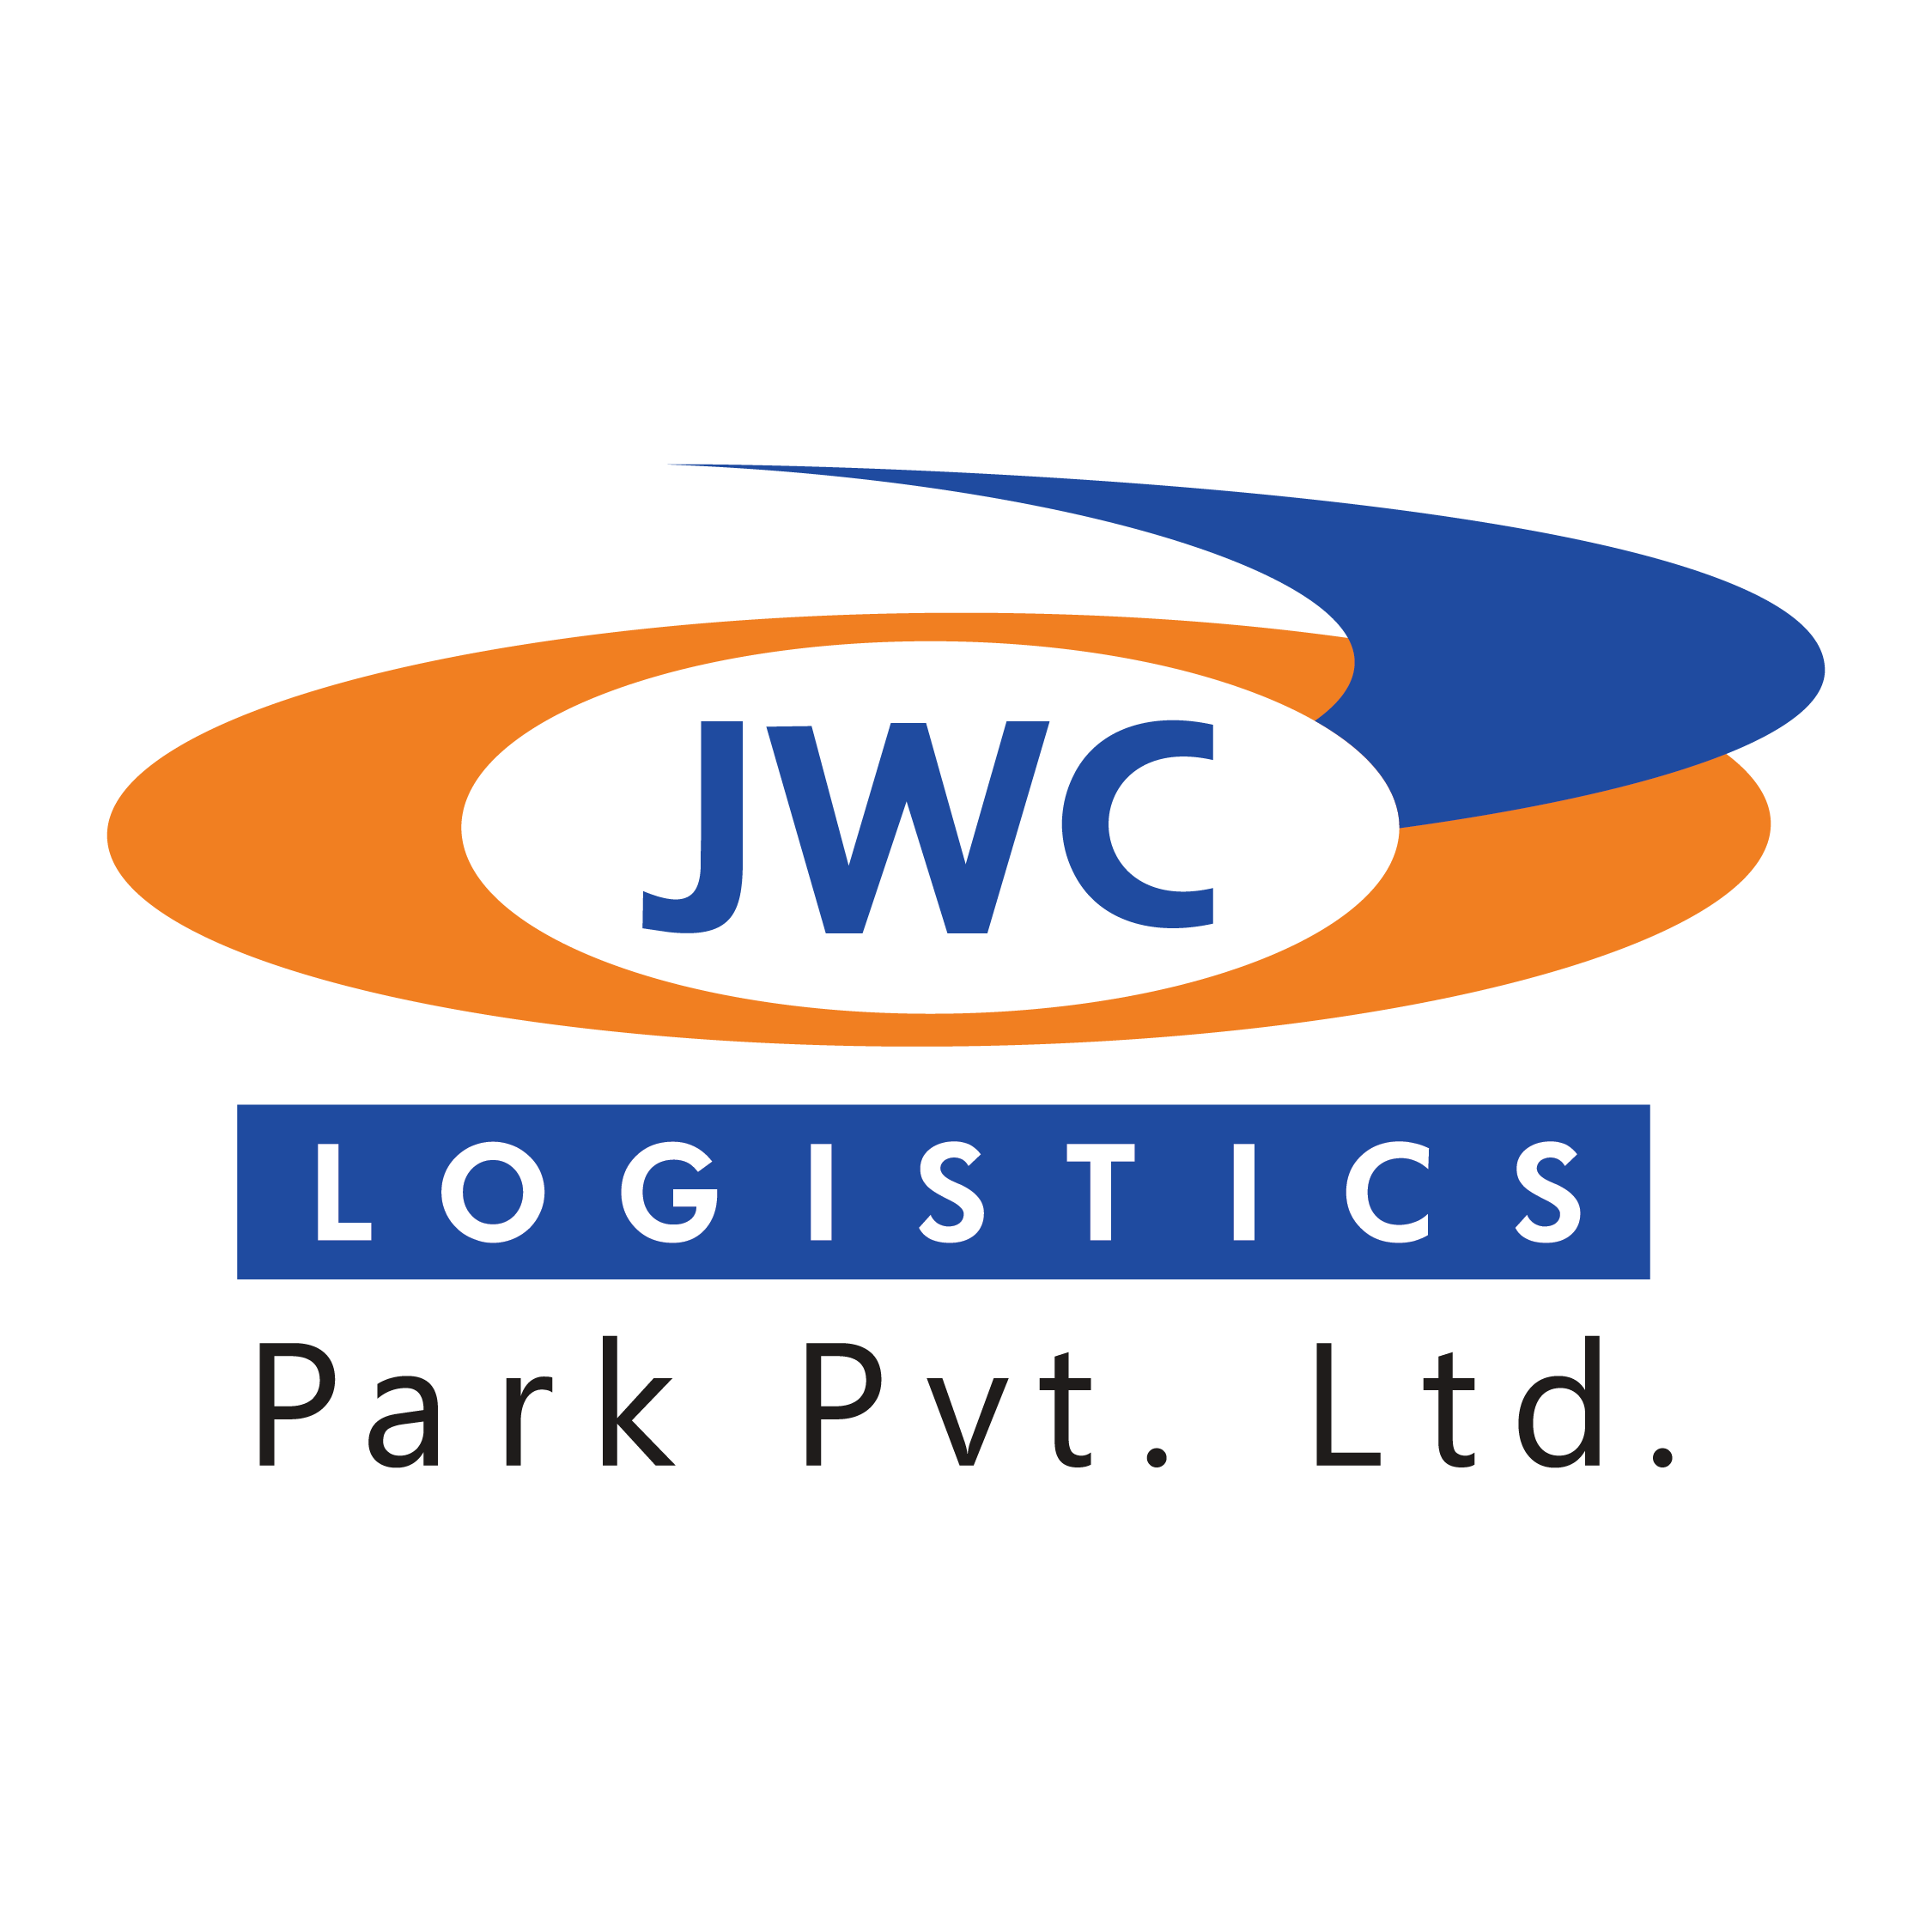 JWC LOGISTICS PARK PVT. LTD.